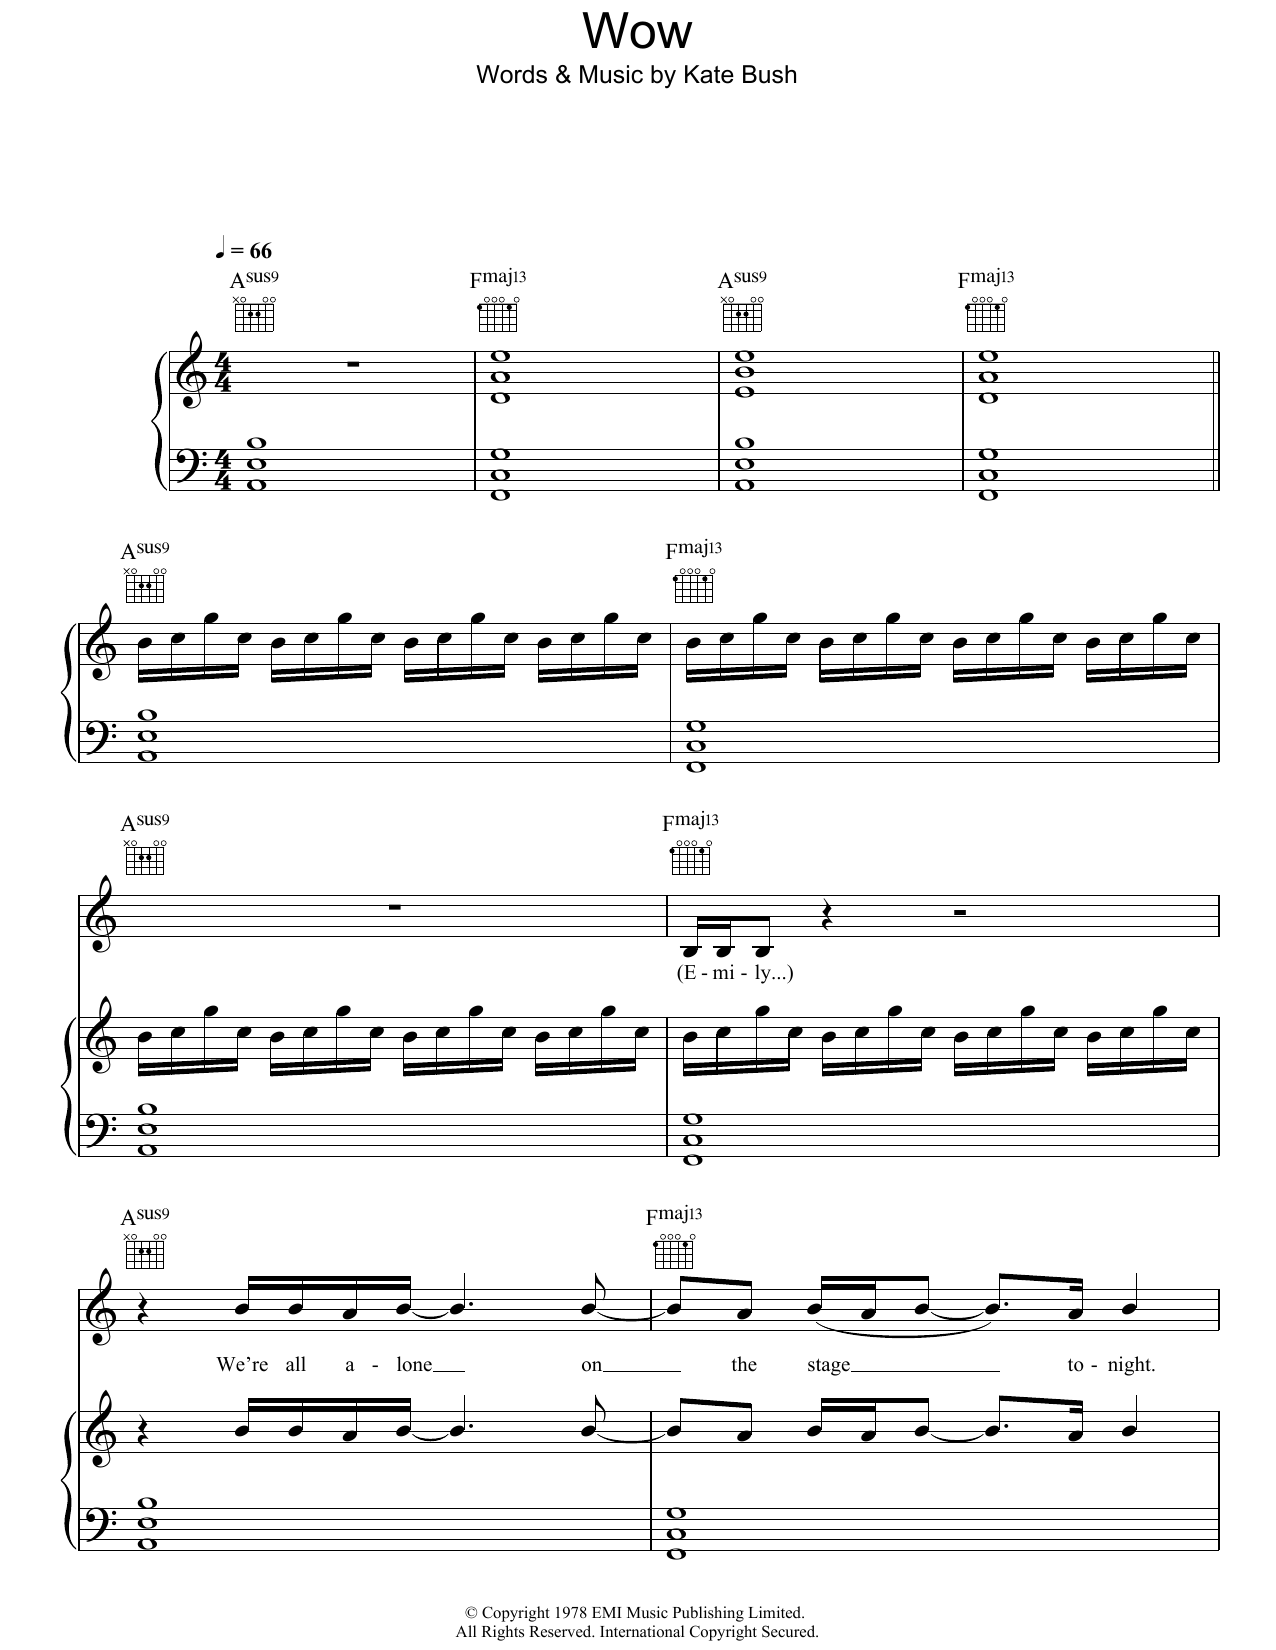 Kate Bush Wow Sheet Music Notes & Chords for Lyrics & Chords - Download or Print PDF